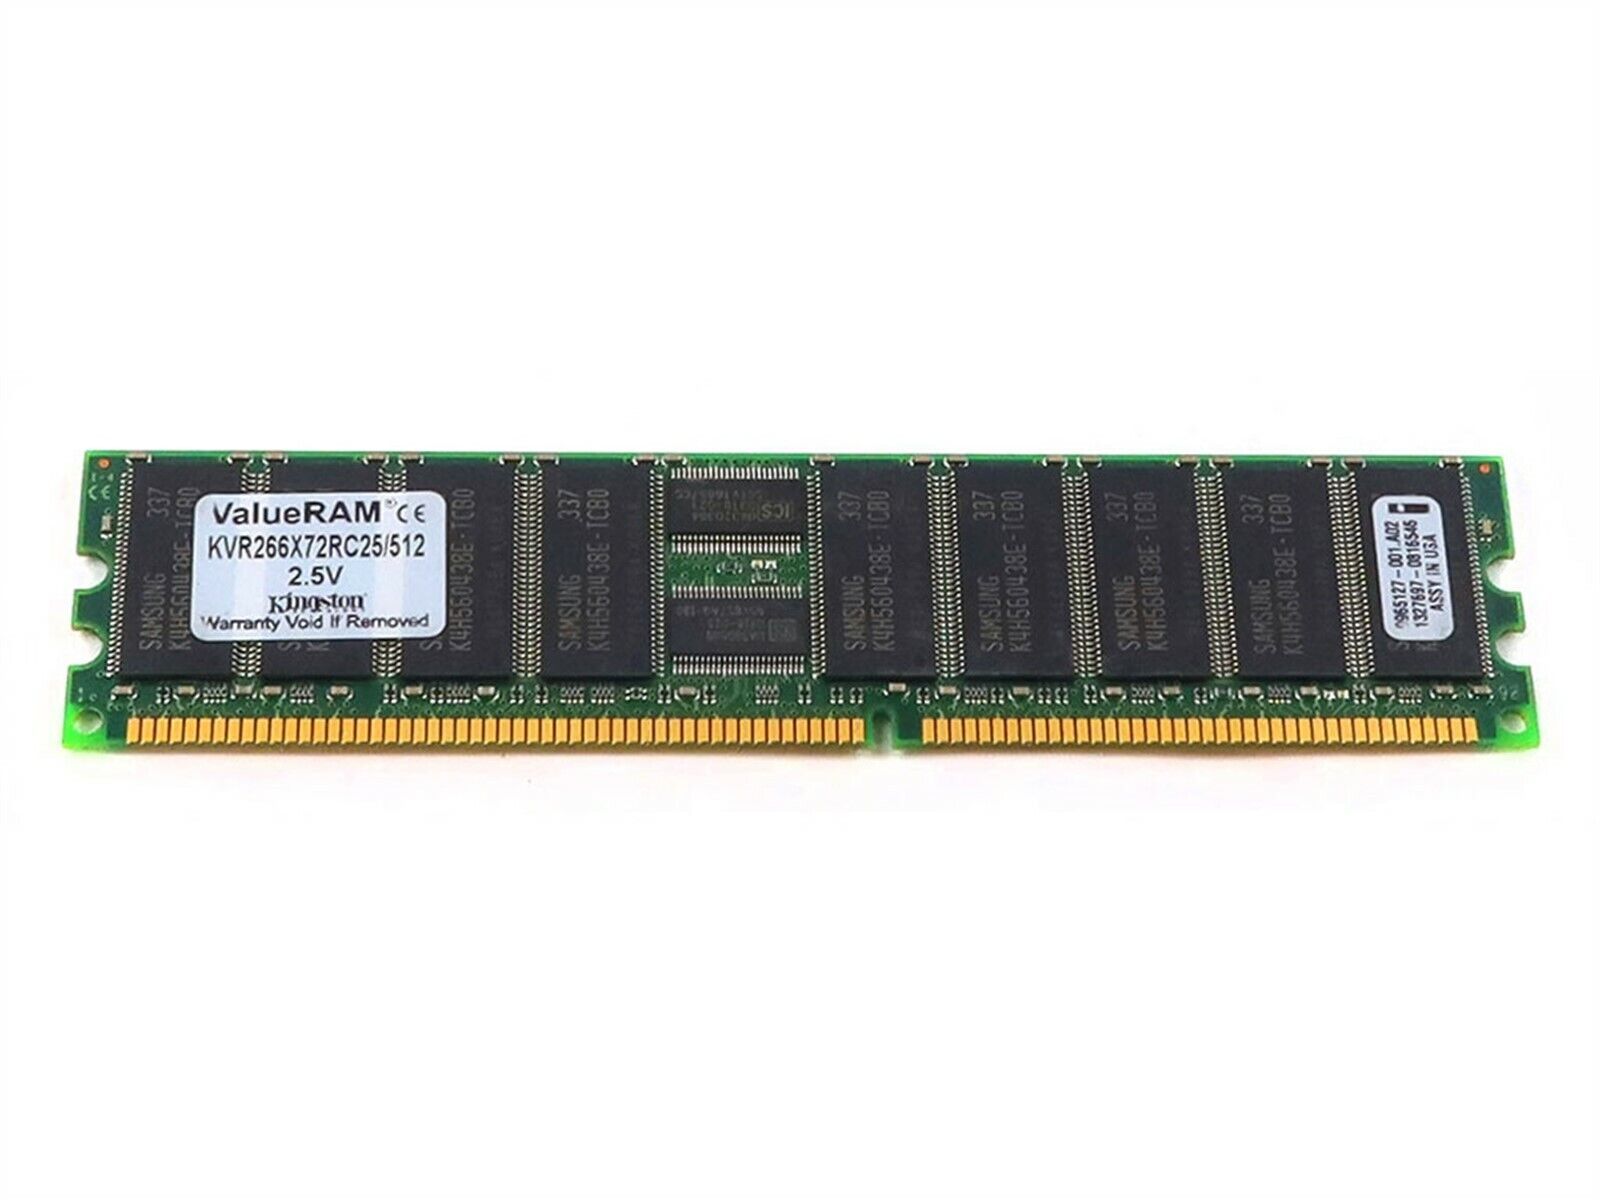 KINGSTON 512MB DDR PC-2100 266MHZ ECC 184-PIN RAM MEMORY MODULE 9965127-001.A02